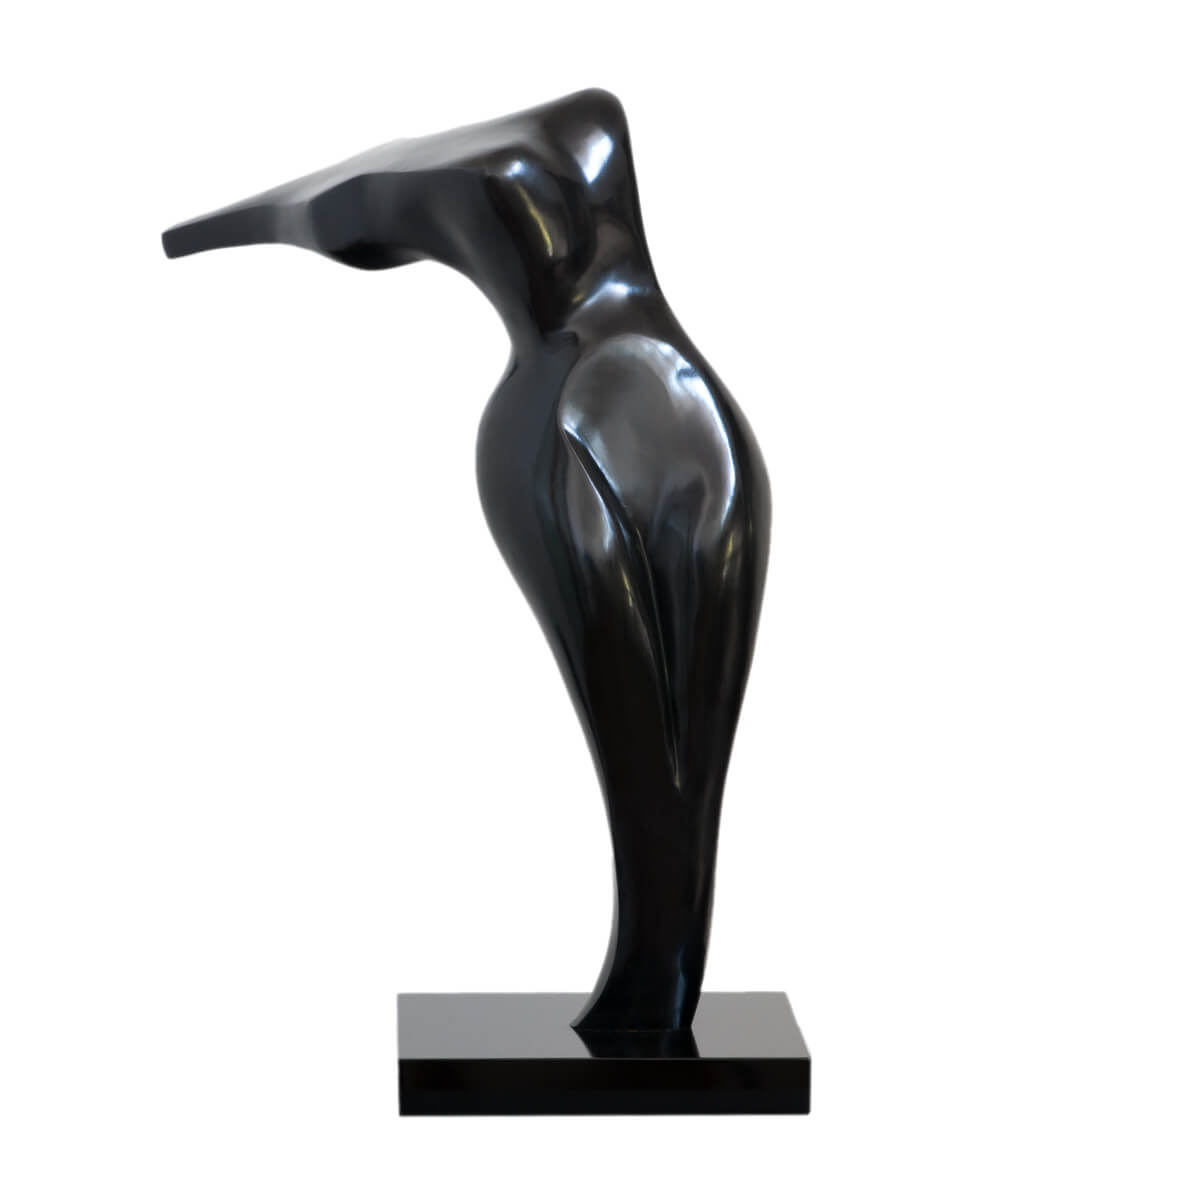 Robert-Helle-Sculpture-Gallery-Header-2-Grace-1200x1200